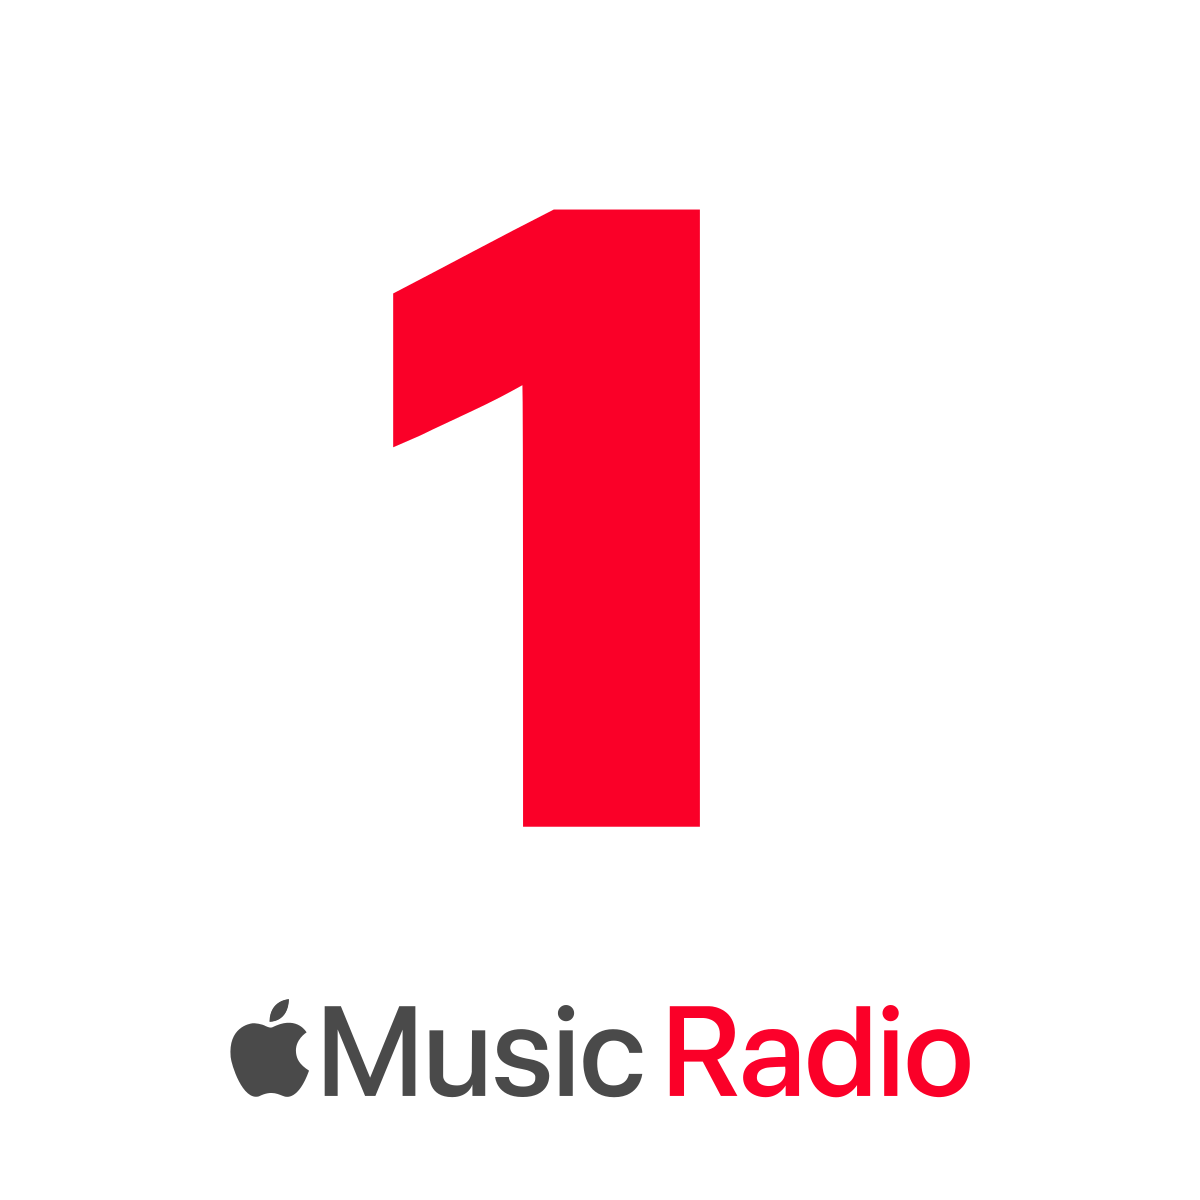 Apple Music 1 - Wikipedia